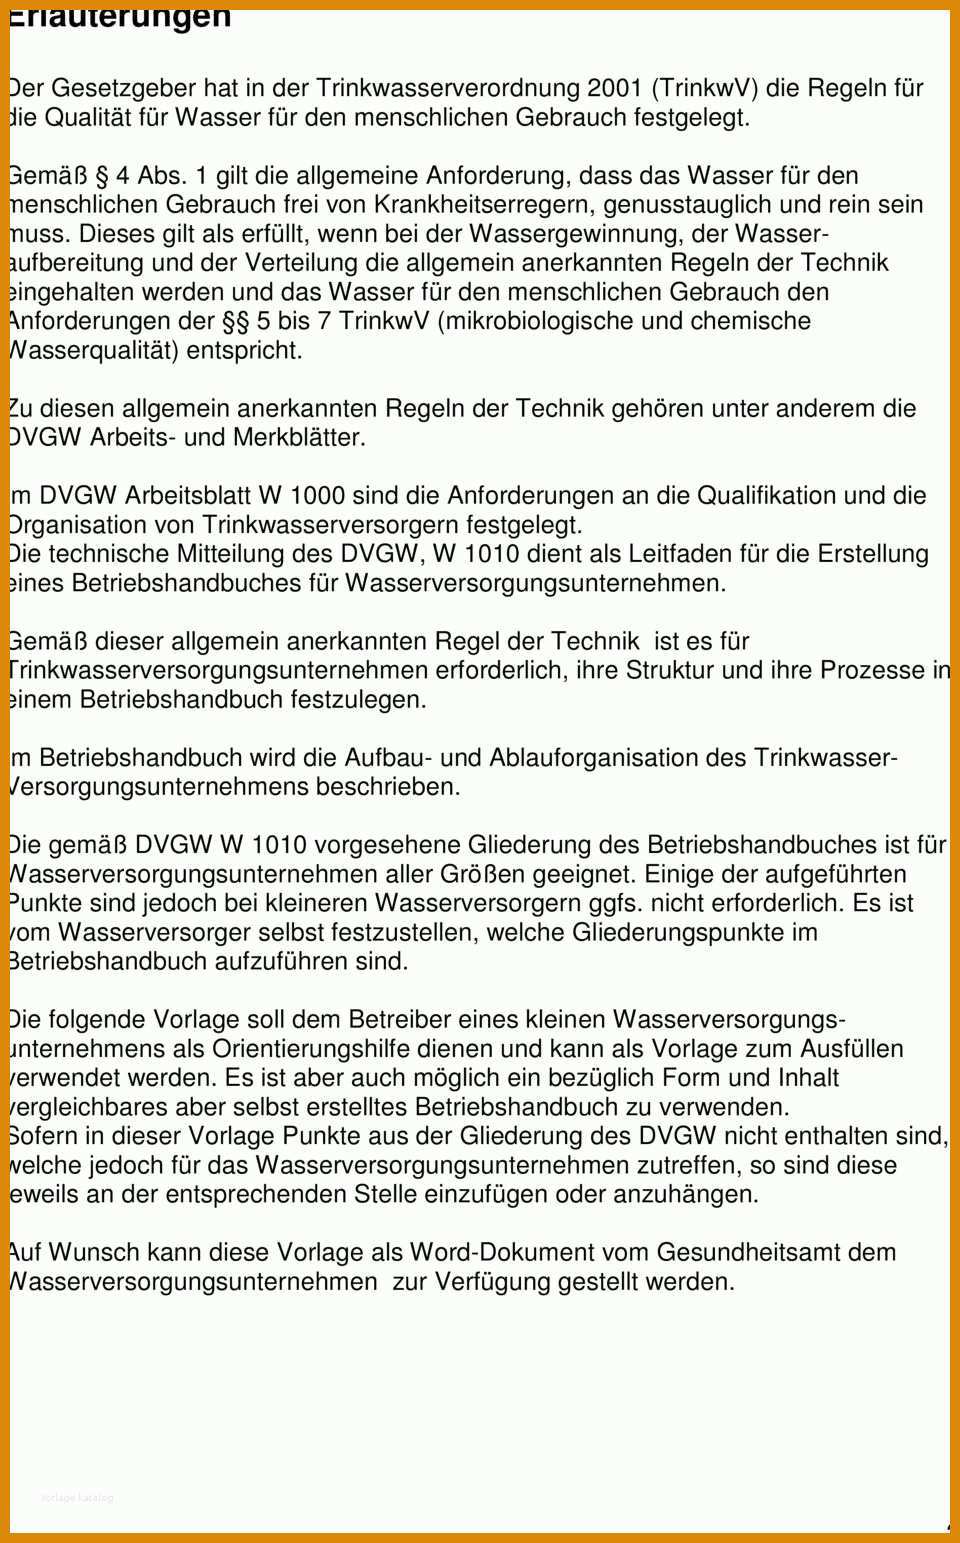 Fabelhaft Betriebshandbuch Vorlage Word 960x1543